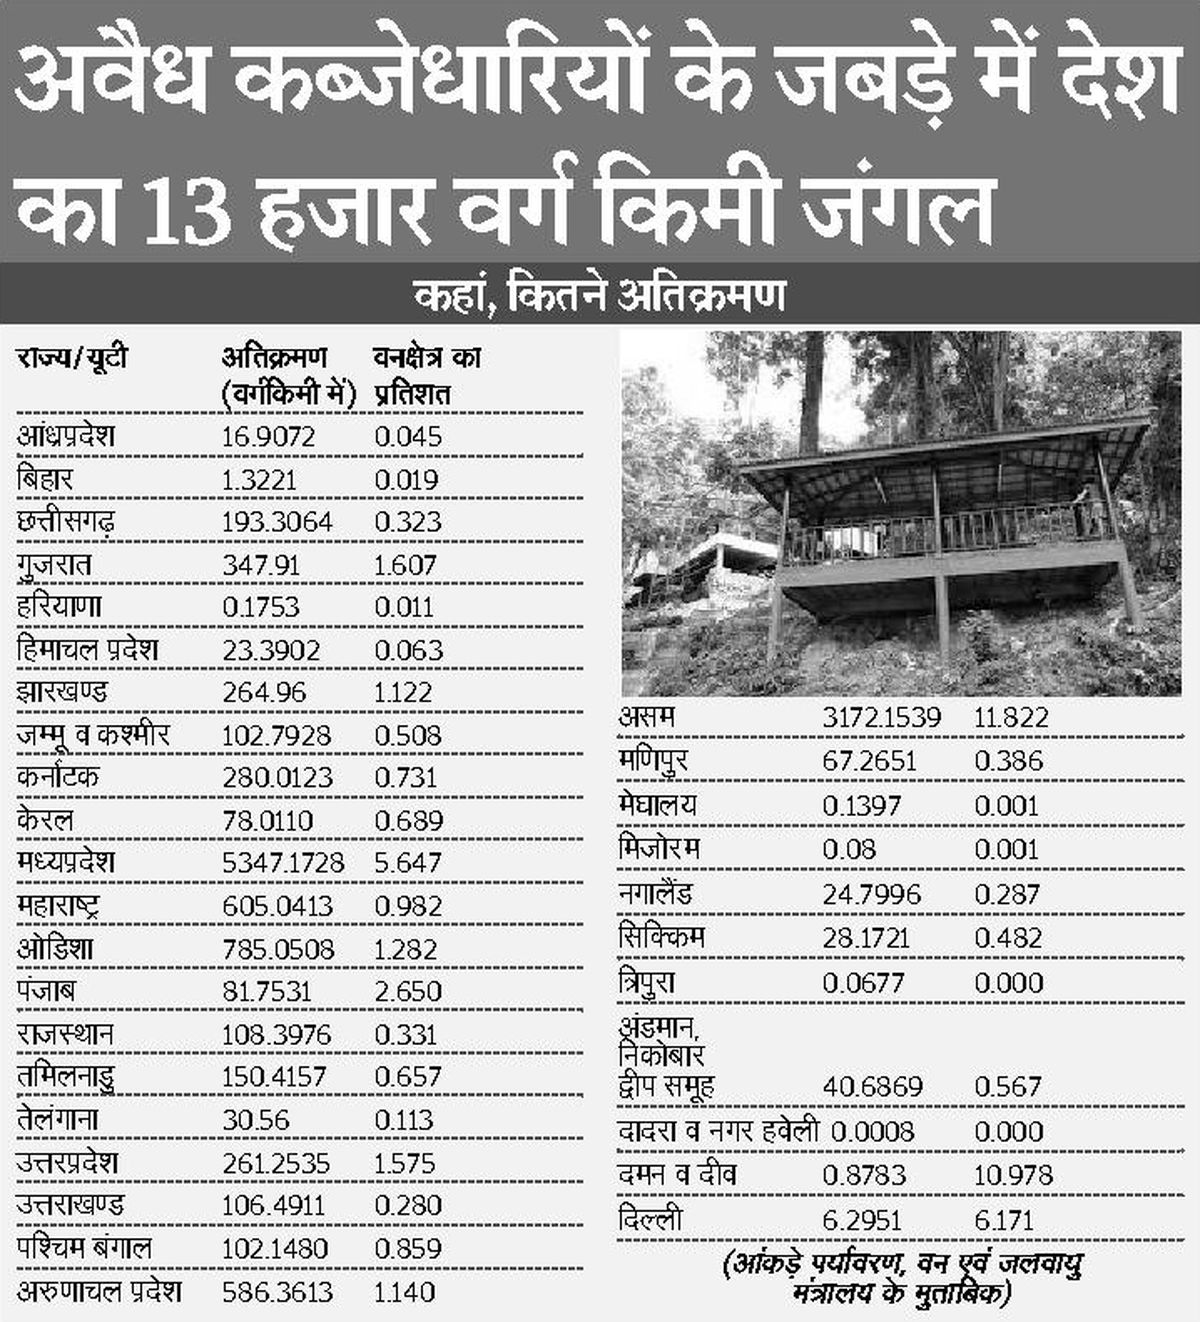 राजस्थान में 108 वर्ग किमी वनक्षेत्र में अवैध कब्जे